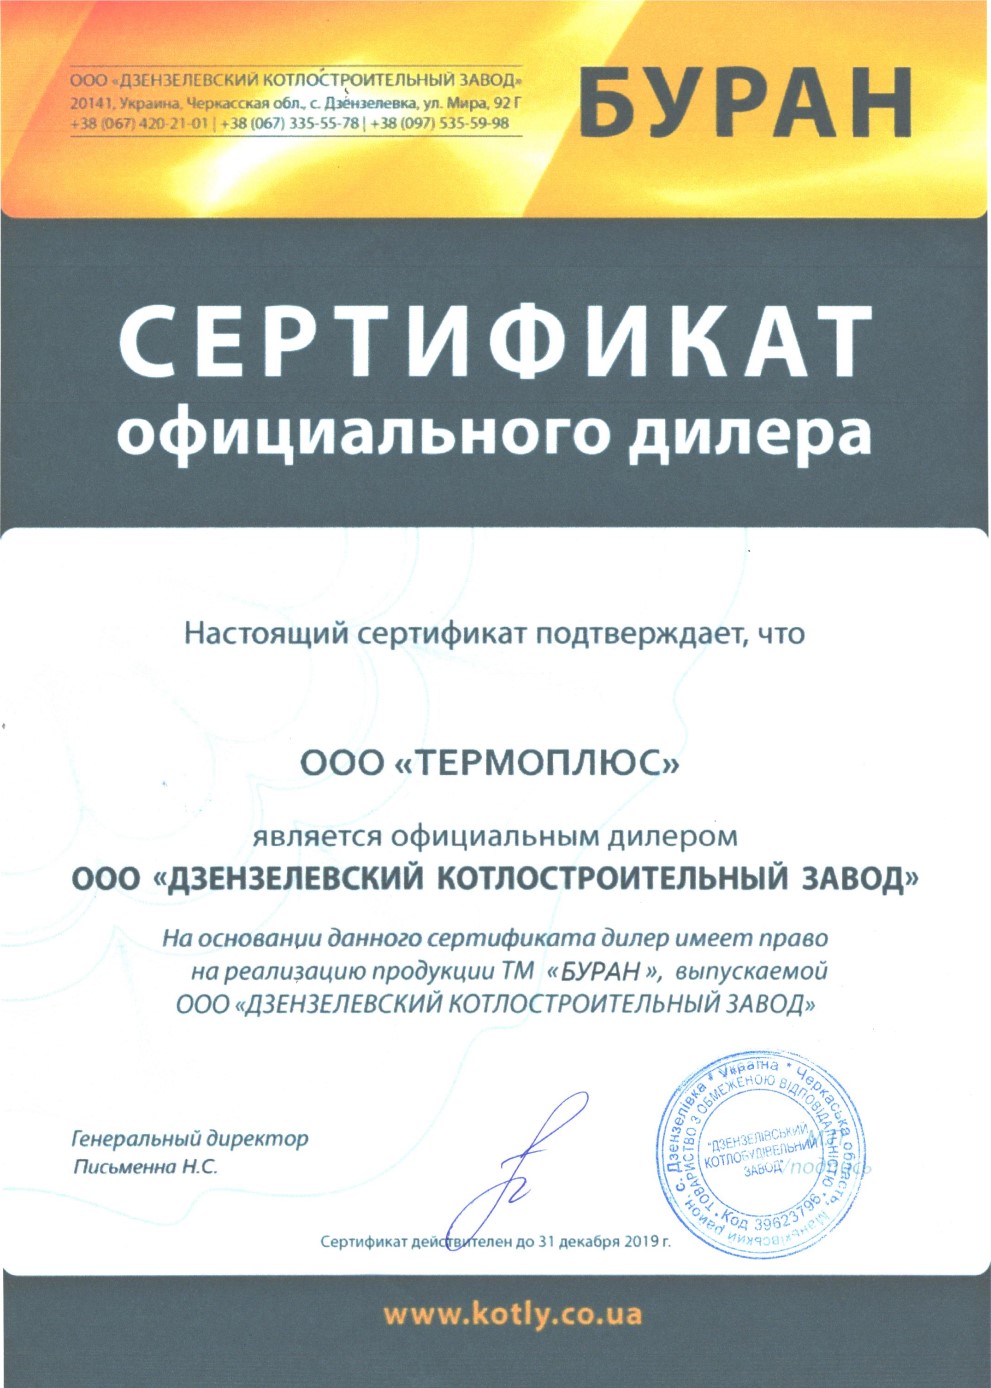 ТОВ ТЕРМОПЛЮС сертификат дилера Буран